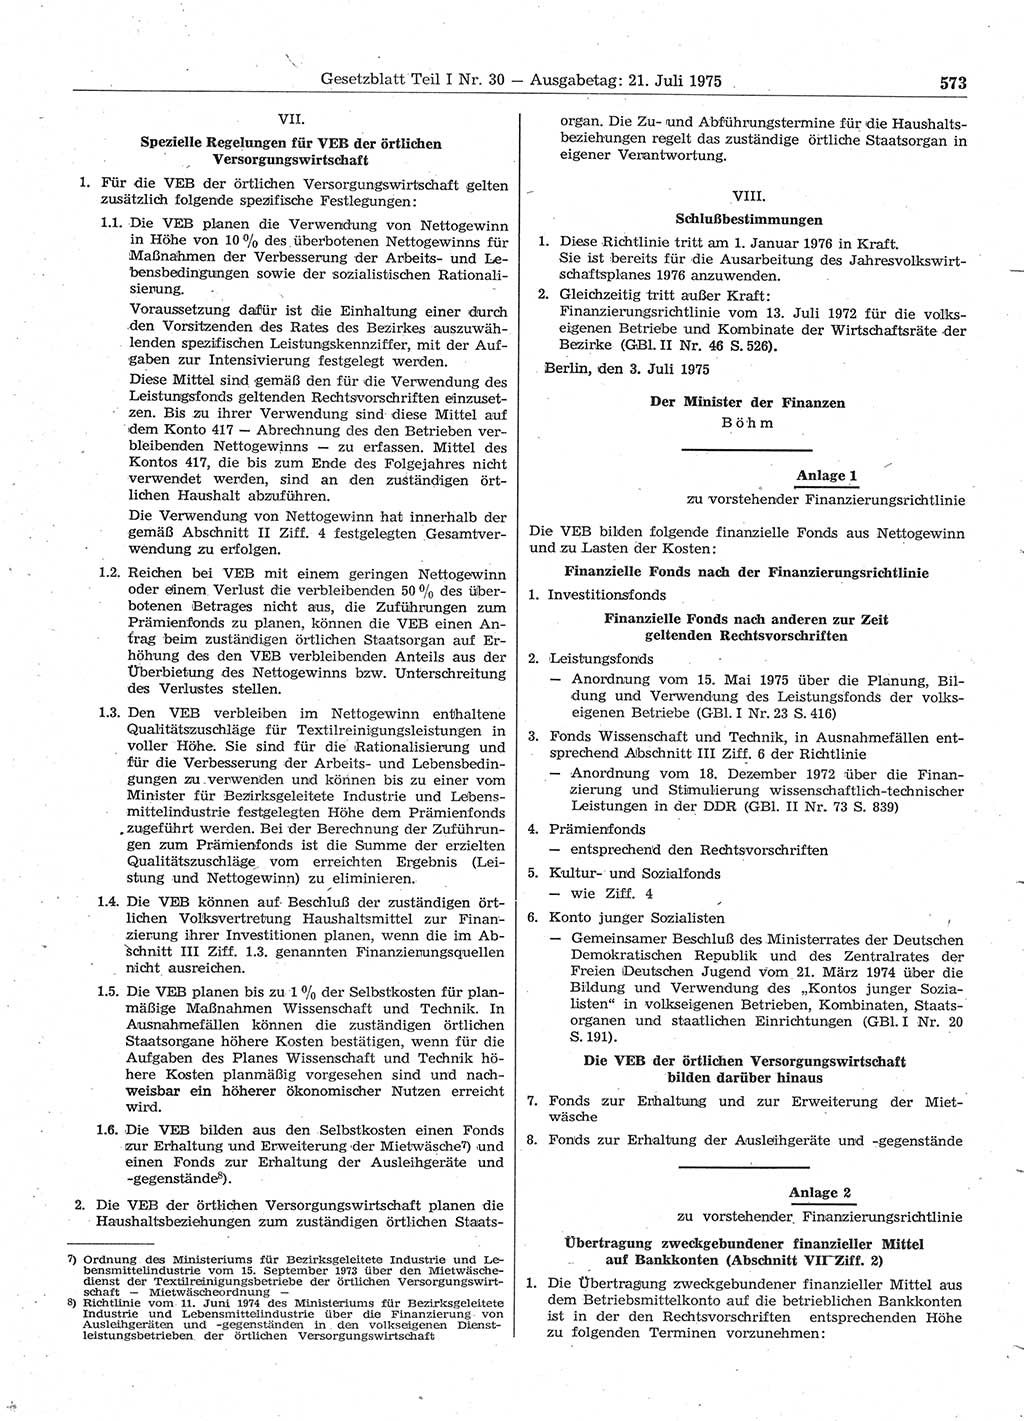 Gesetzblatt (GBl.) der Deutschen Demokratischen Republik (DDR) Teil Ⅰ 1975, Seite 573 (GBl. DDR Ⅰ 1975, S. 573)